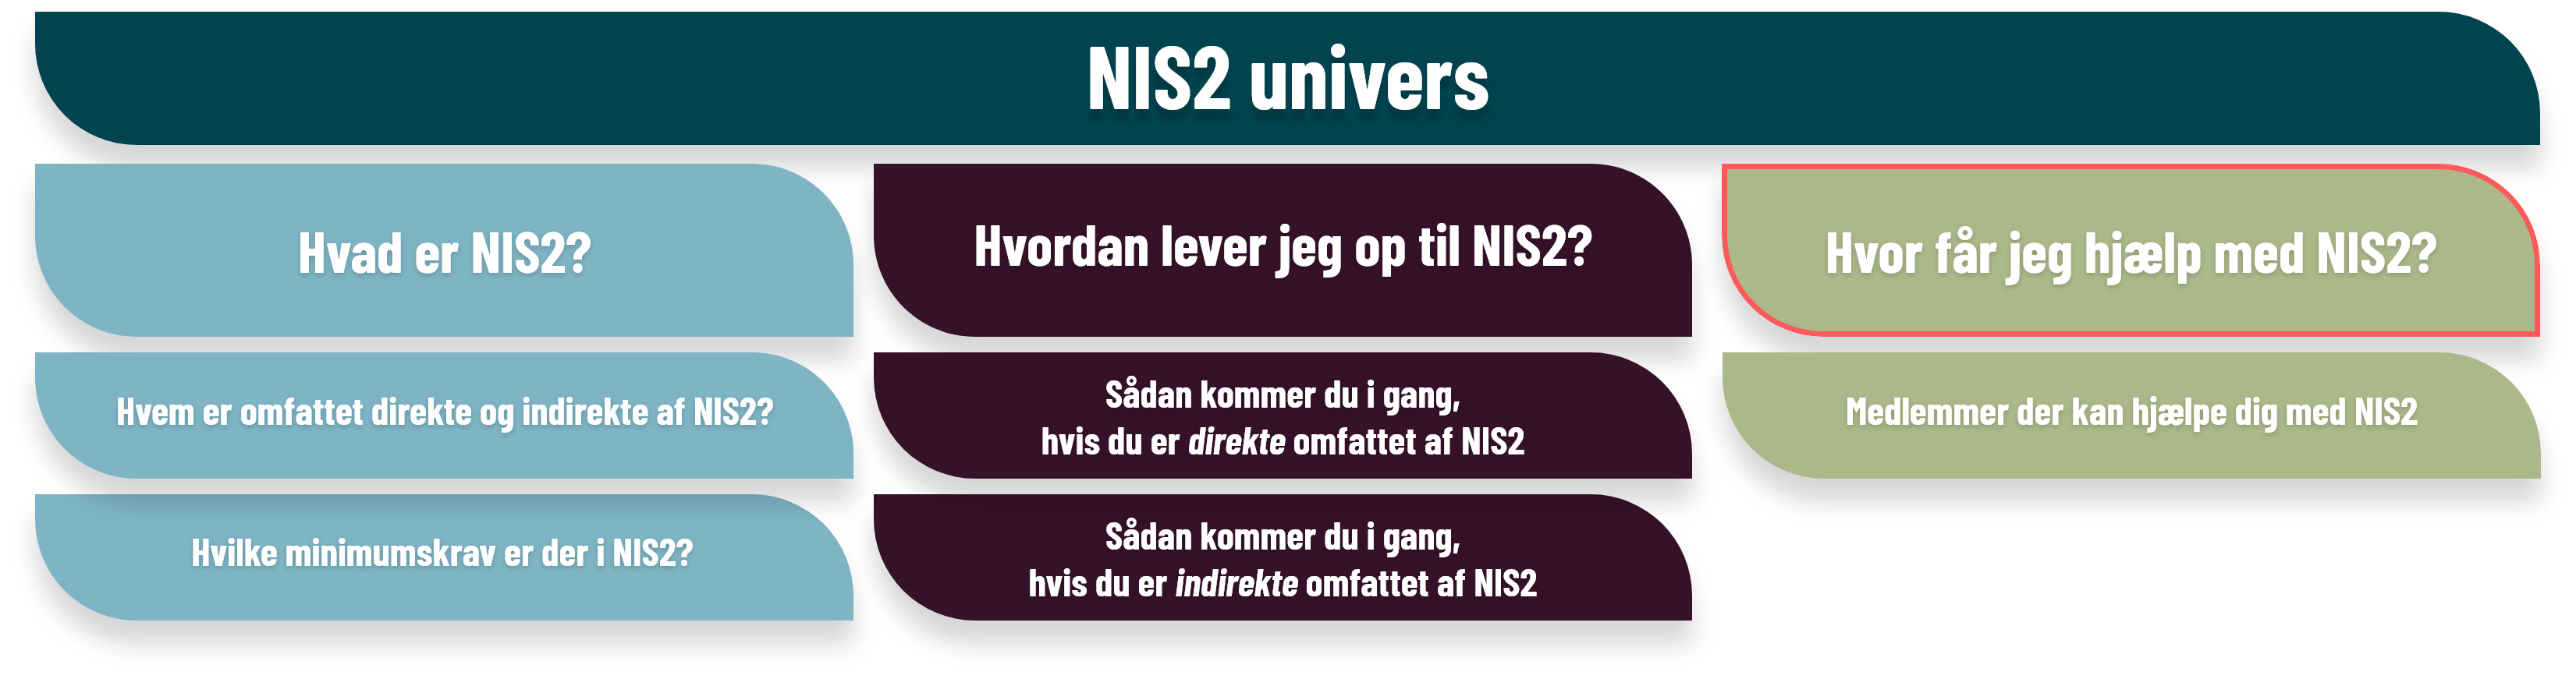 Hvor får jeg hjælp med NIS2?